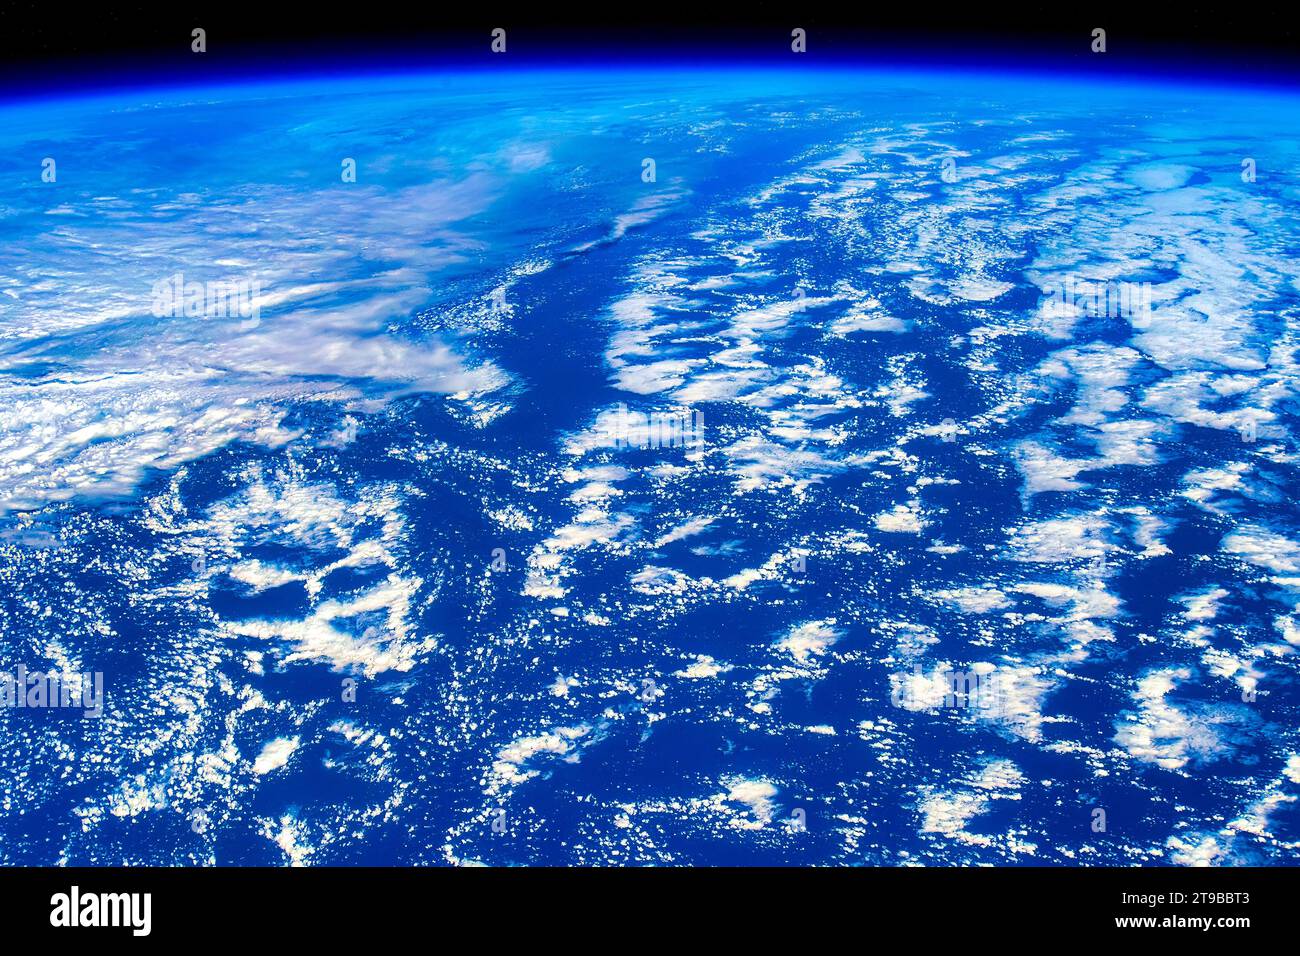 Belleza en la naturaleza. Planeta Tierra característica o detalle. Vista aérea desde la ISS o la Estación Espacial Internacional. Pautas de uso: https://www.nasa.gov/nasa Foto de stock